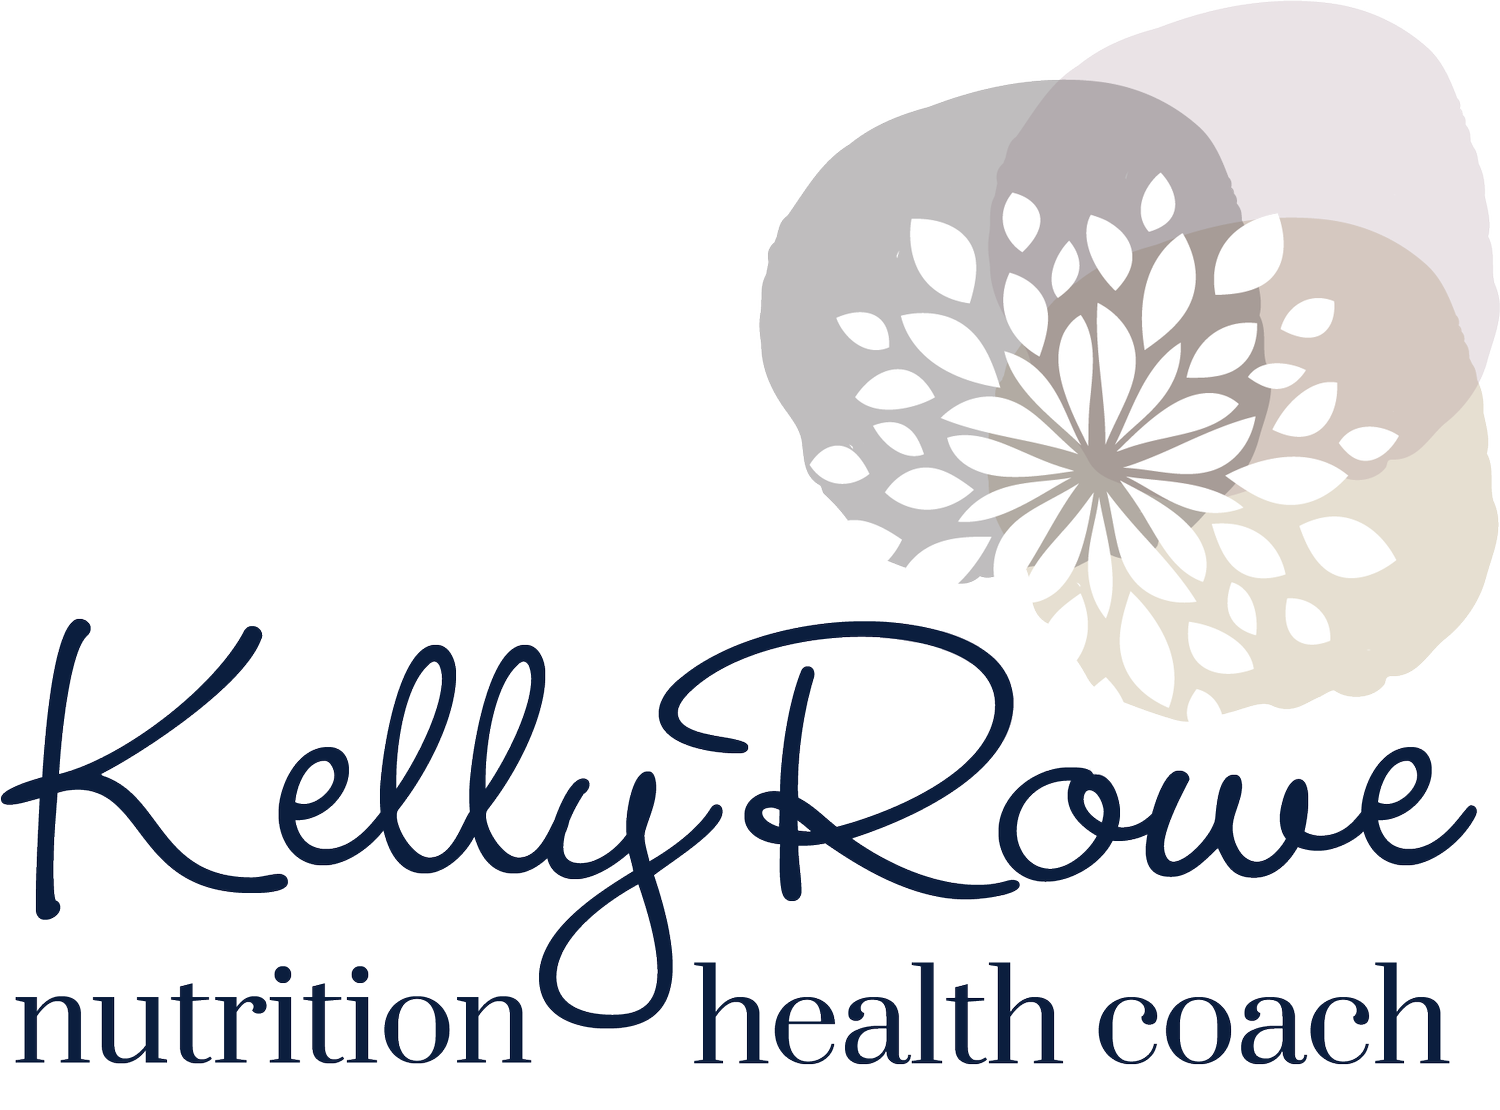 Kelly Rowe Nutrition Health Coach